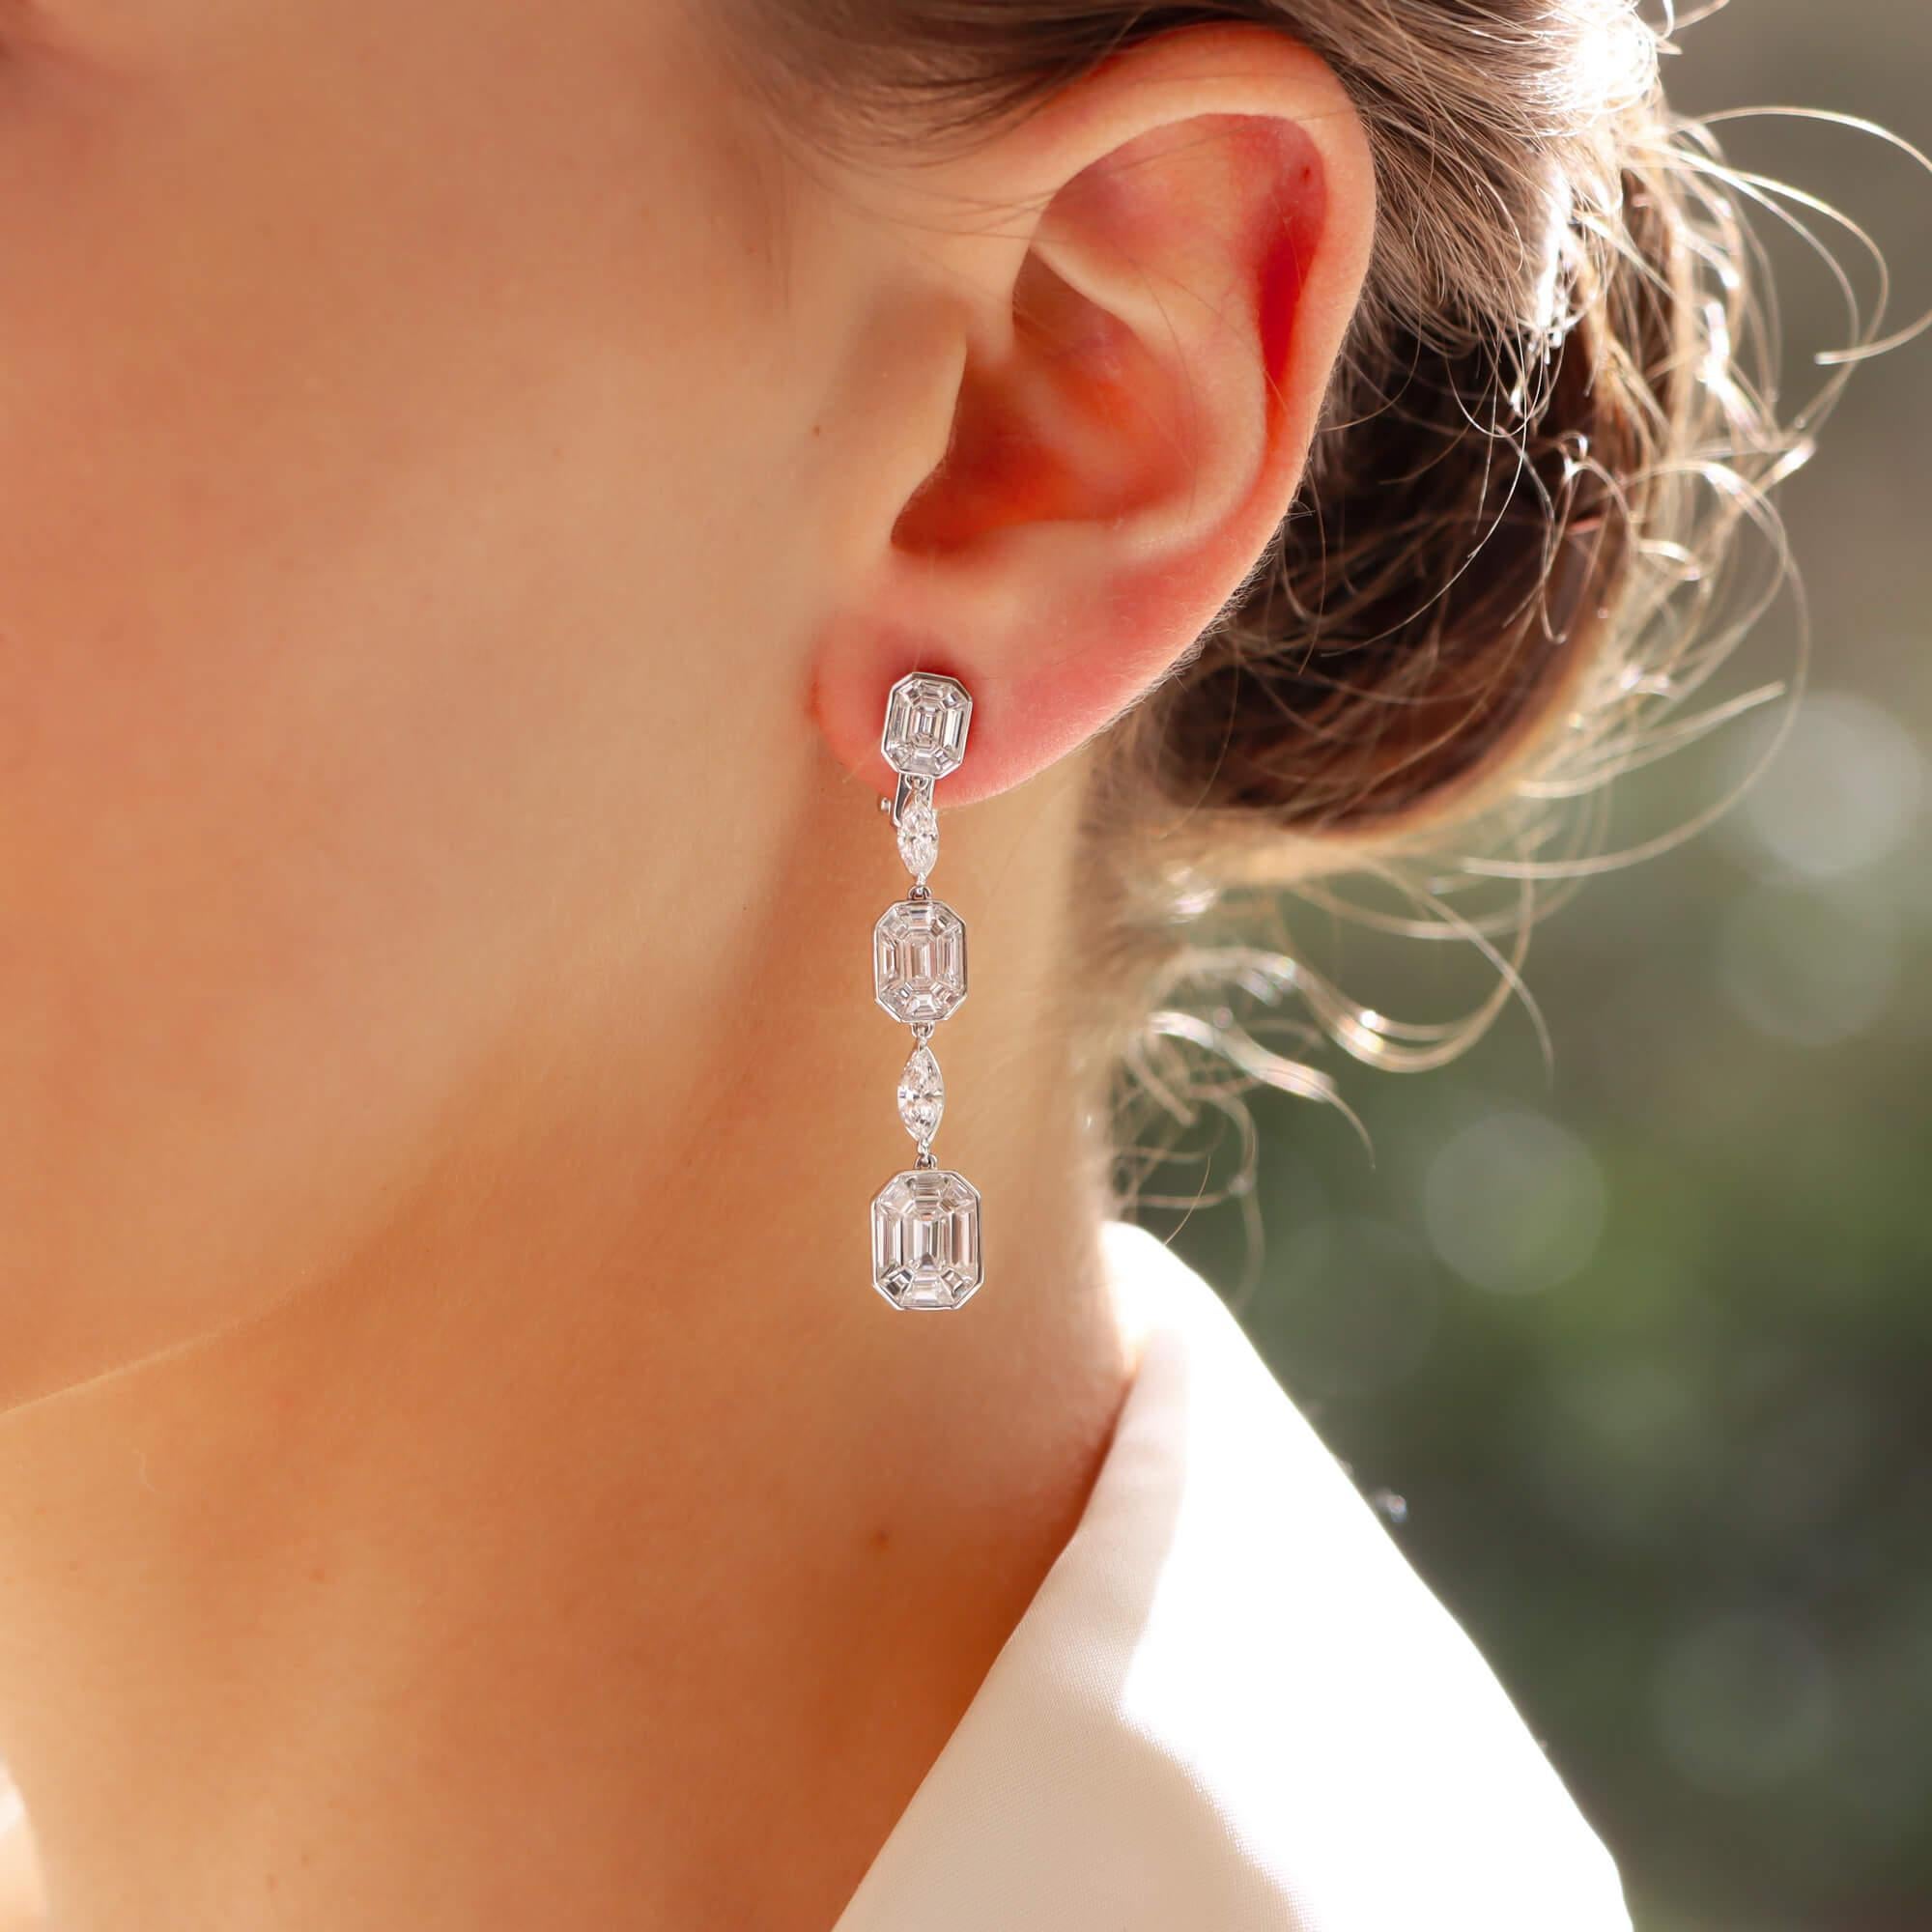 Ein atemberaubendes Paar Ohrringe aus Platin mit Diamanten im Smaragdschliff.

Jeder Ohrring besteht aus insgesamt 3 abgestuften Smaragd- und Baguetteschliff-Diamantenclustern, die alle rubover gefasst sind und von einem facettierten